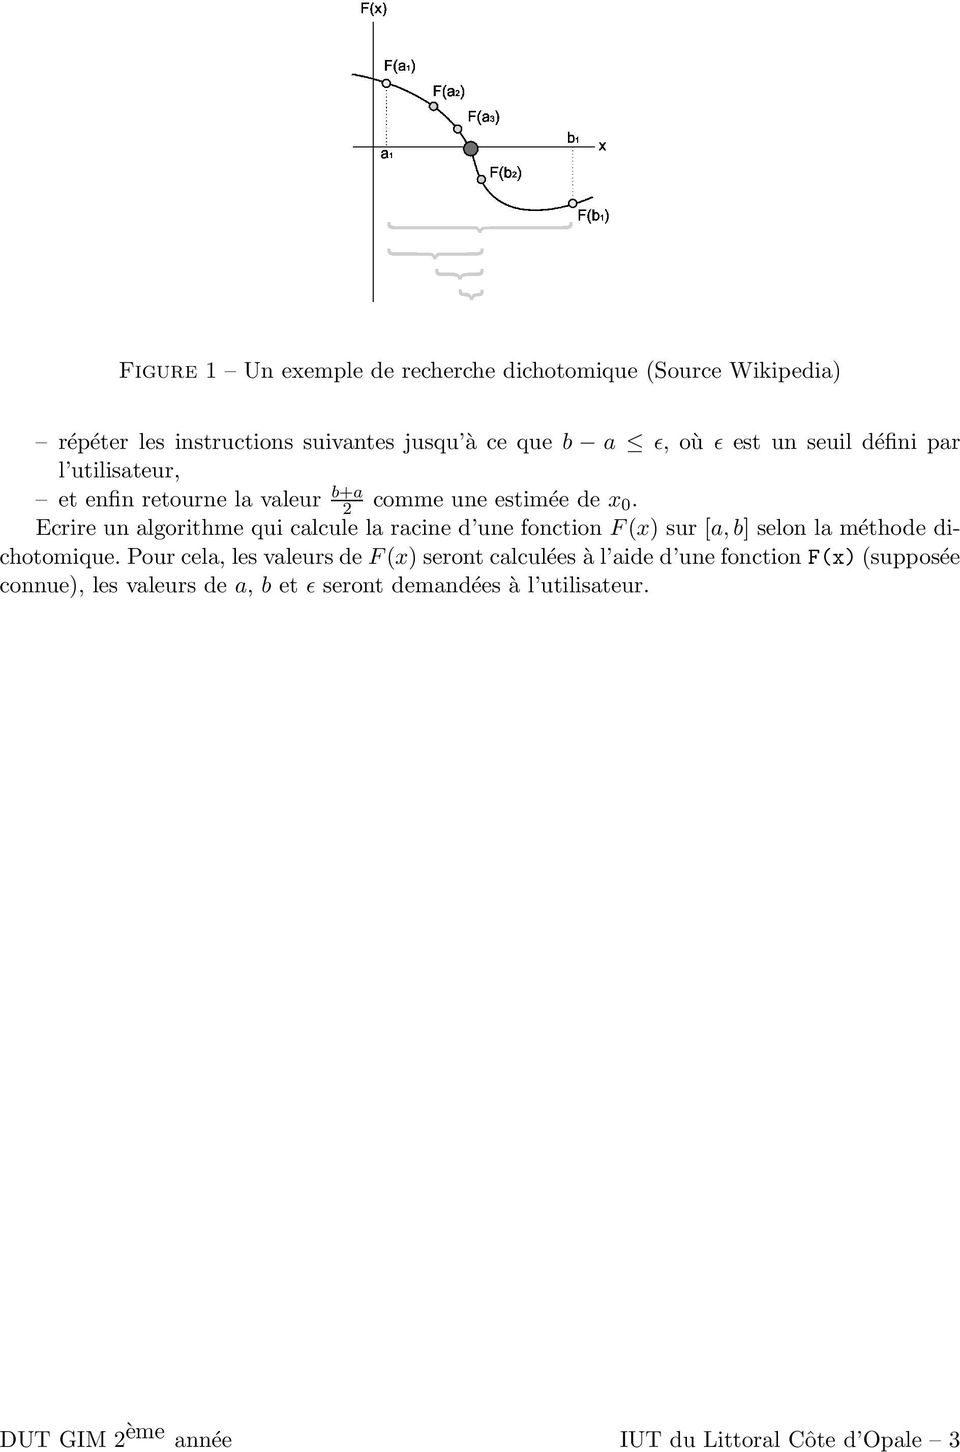 Ecrire un algorithme qui calcule la racine d une fonction F(x) sur [a,b] selon la méthode dichotomique.